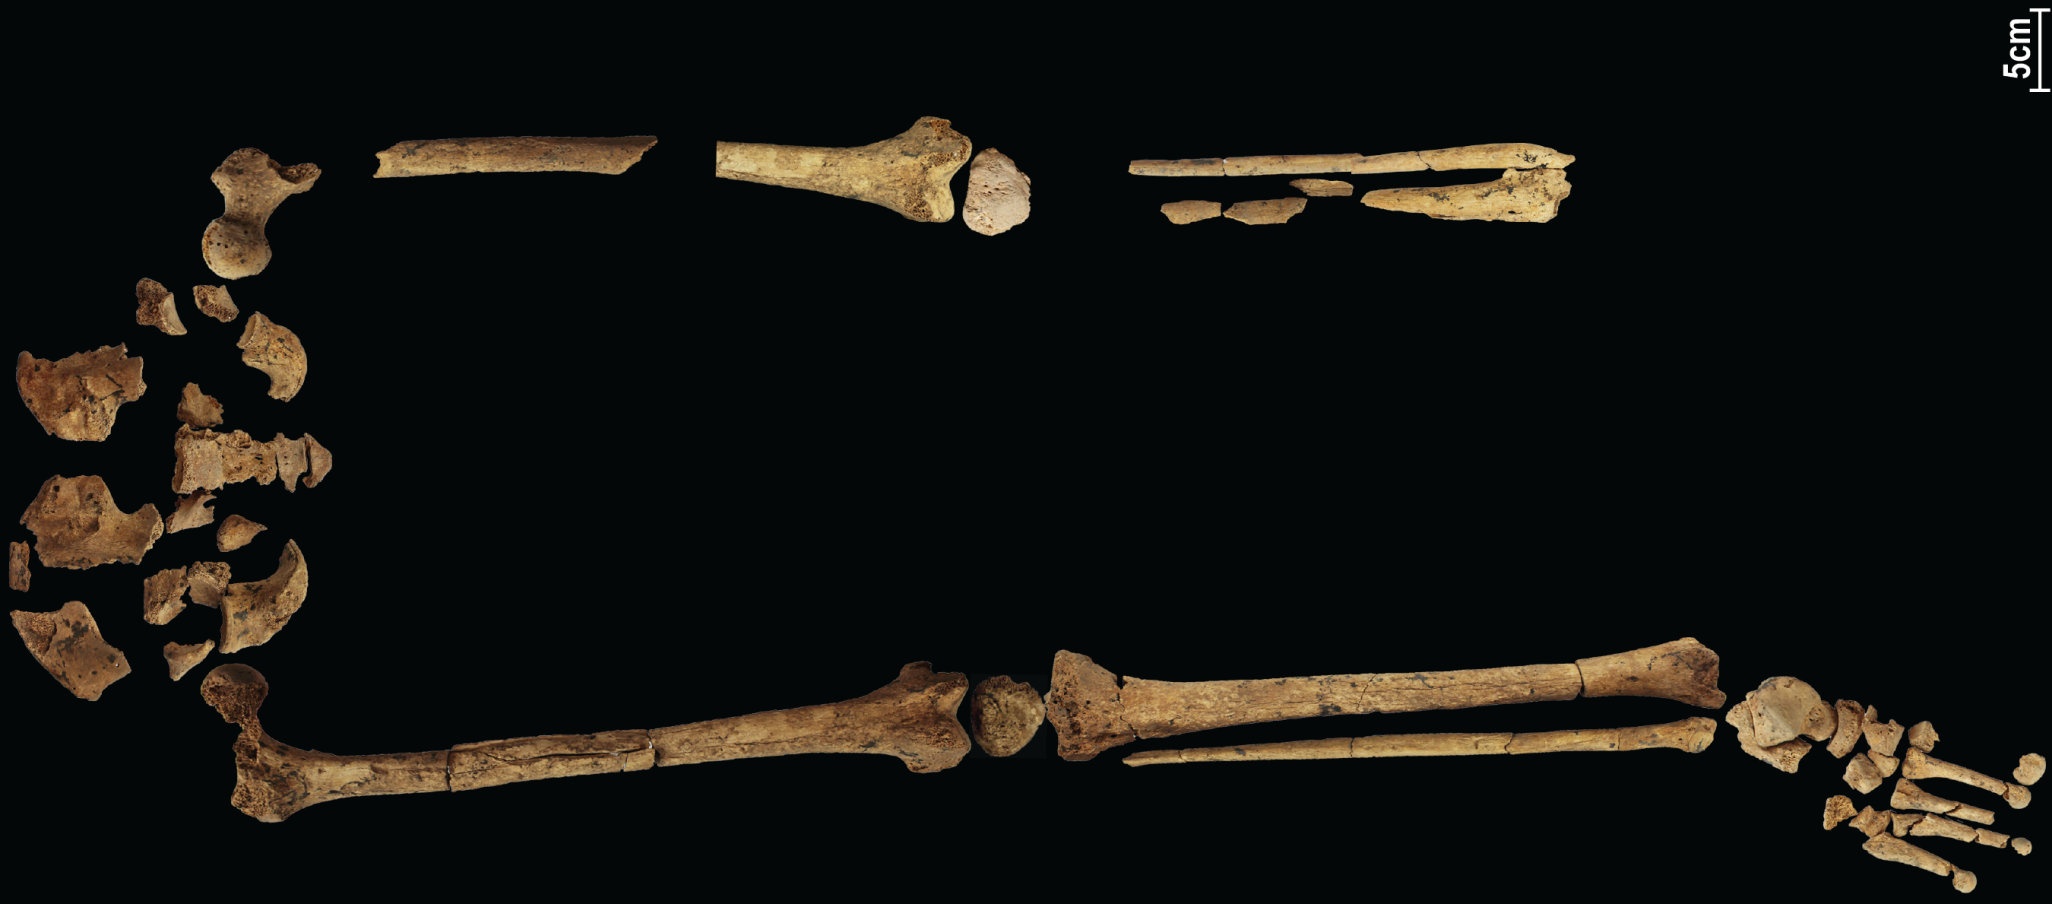 โครงกระดูกอายุ 31,000 ปีที่แสดงการผ่าตัดที่ซับซ้อนที่รู้จักเร็วที่สุดสามารถเขียนประวัติศาสตร์ใหม่ได้! 4